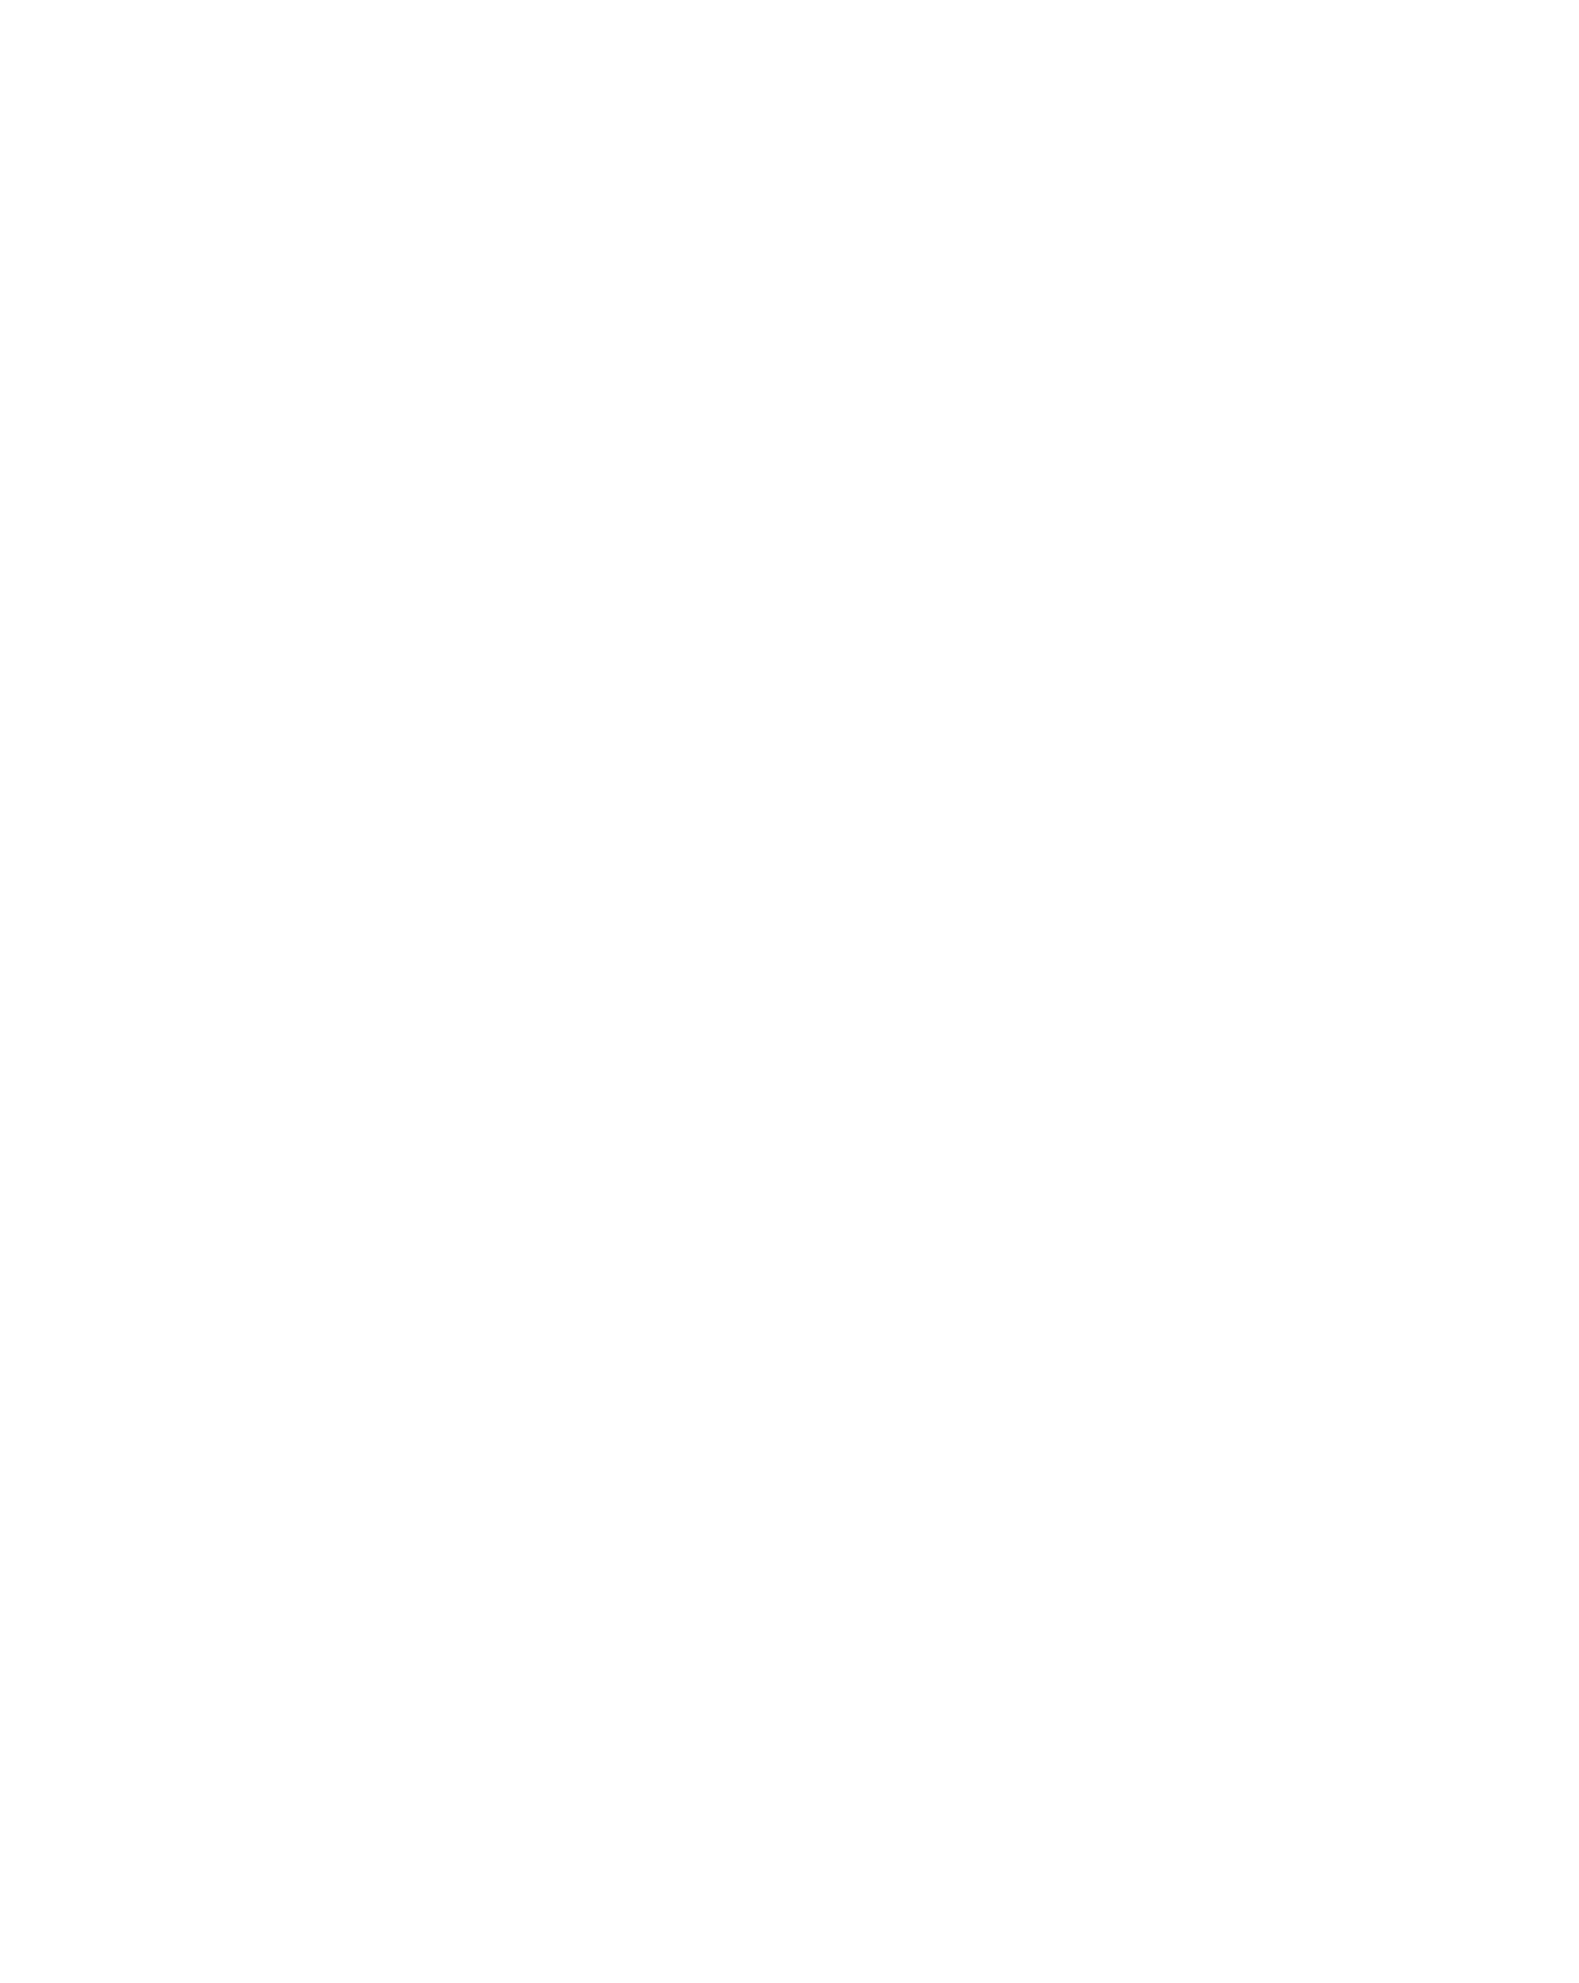 curlthecurls